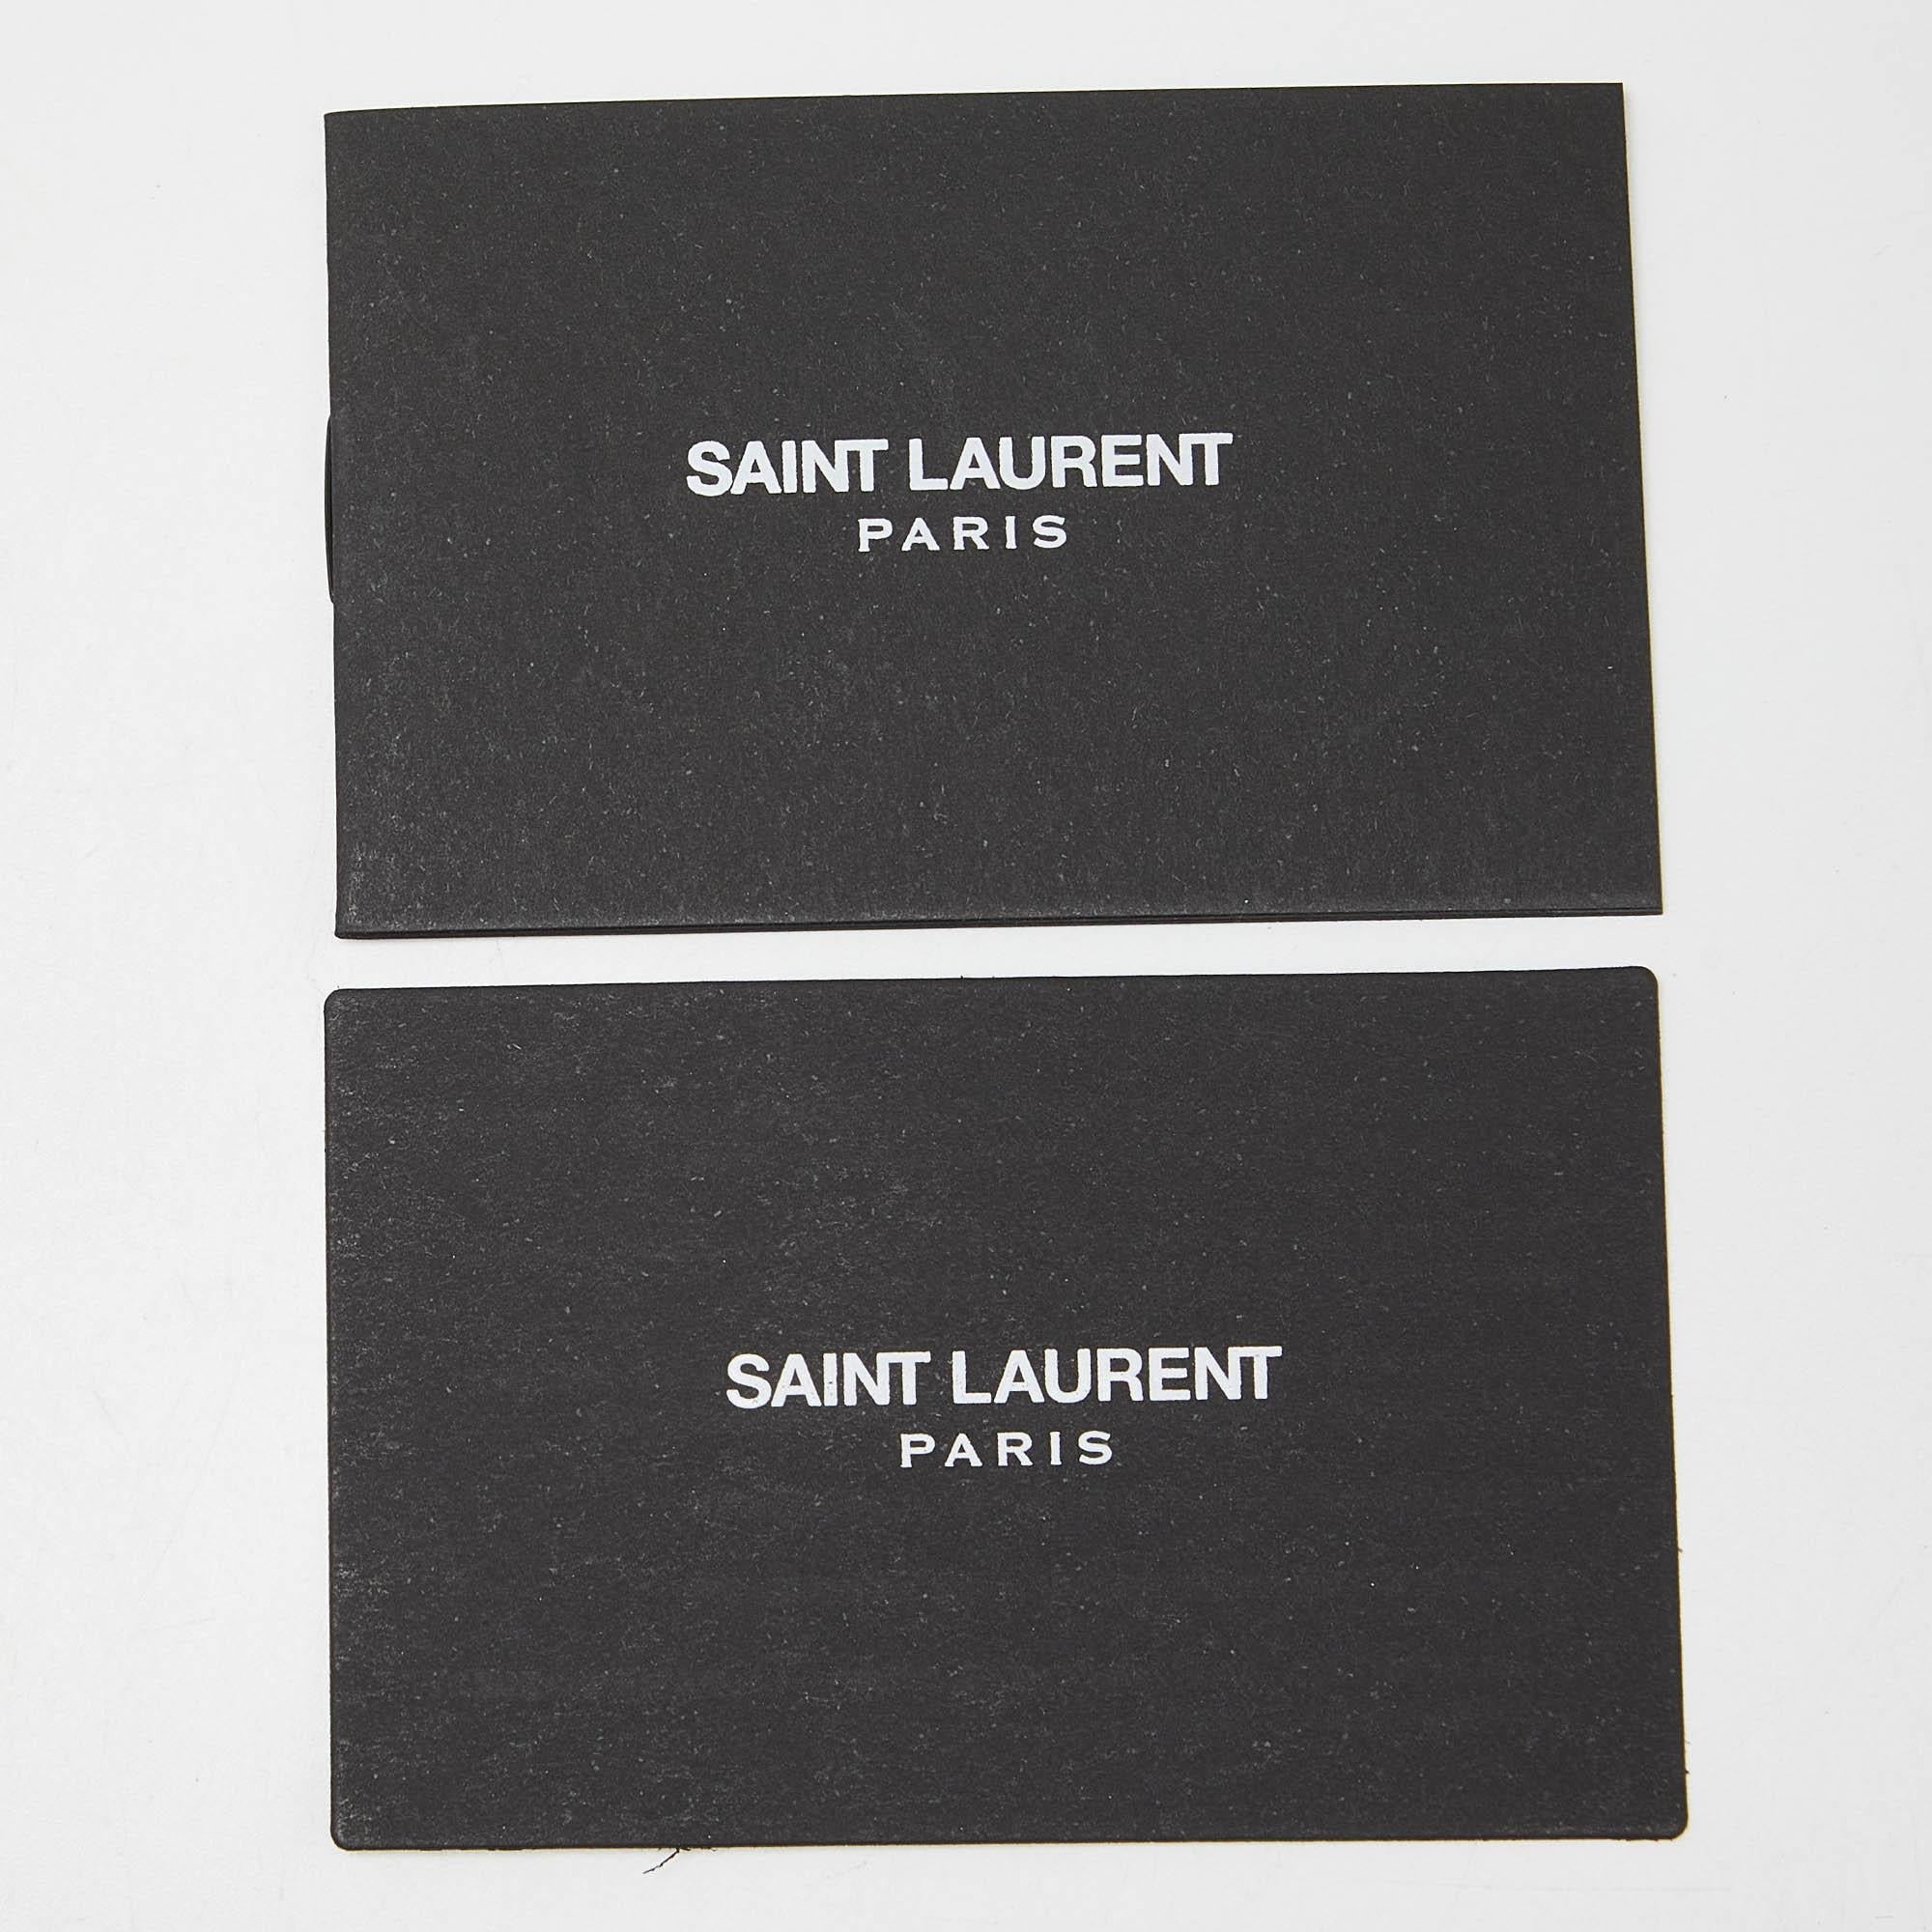 Saint Laurent Bleu foncé Leather Small Classic Sac De Jour Tote 8